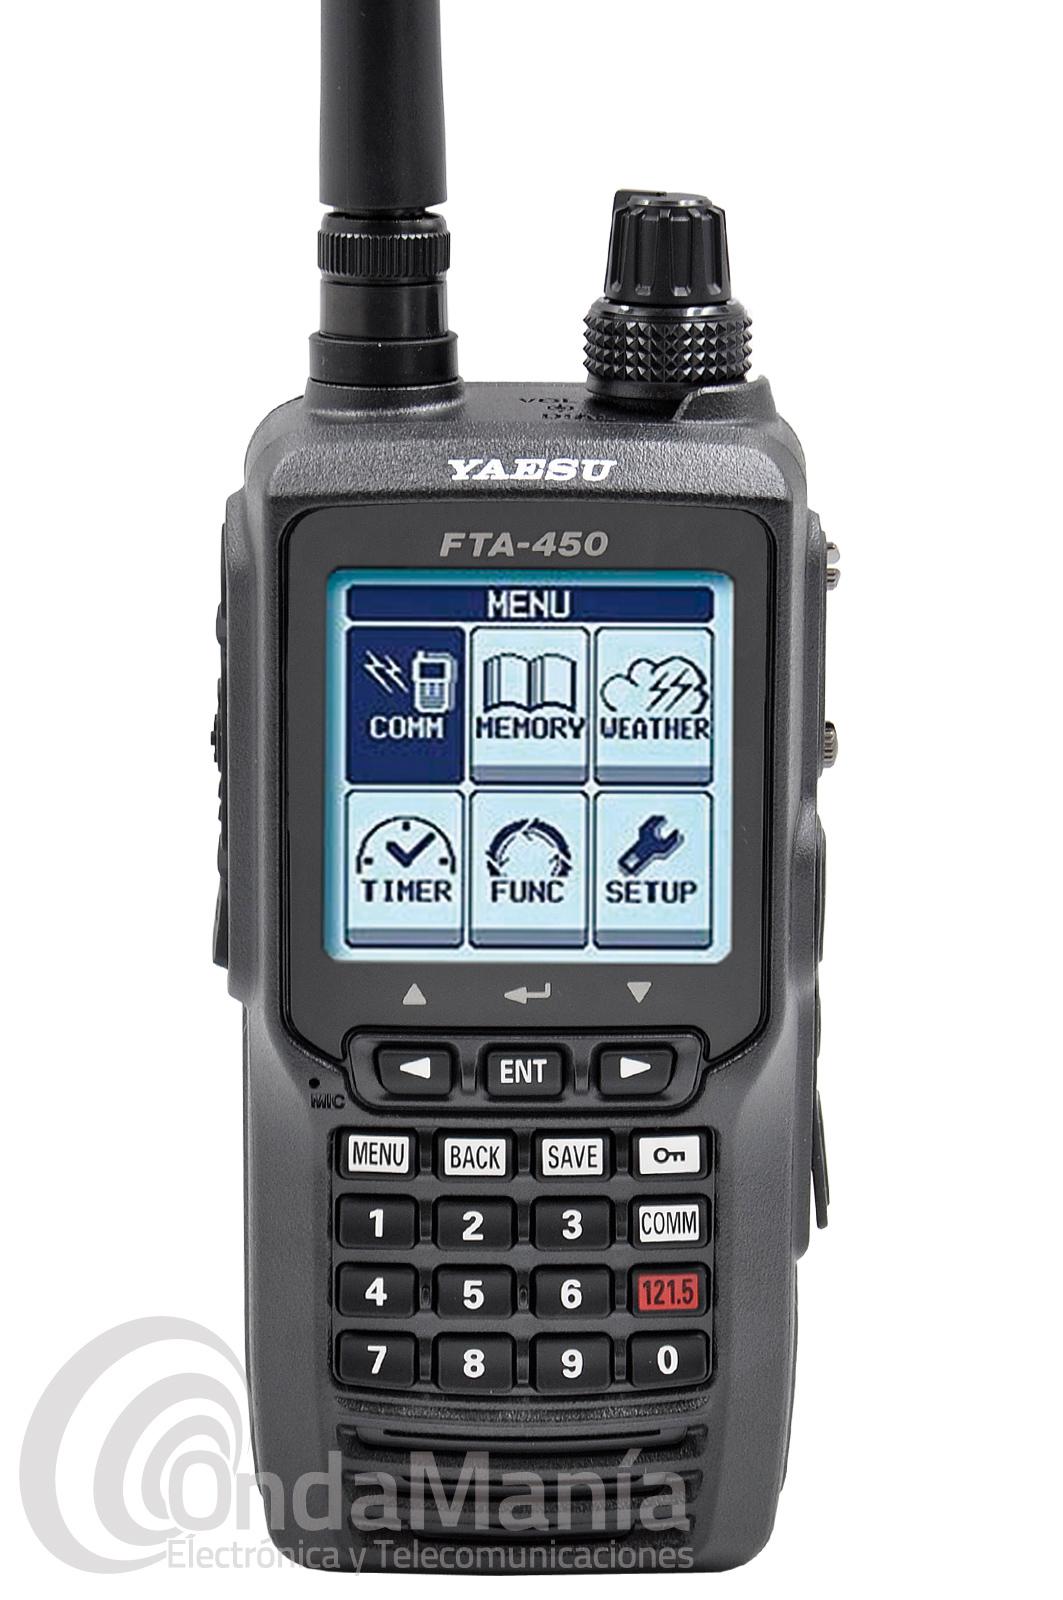 Involucrado ego precio YAESU FTA-450L walkie talkie de banda aérea